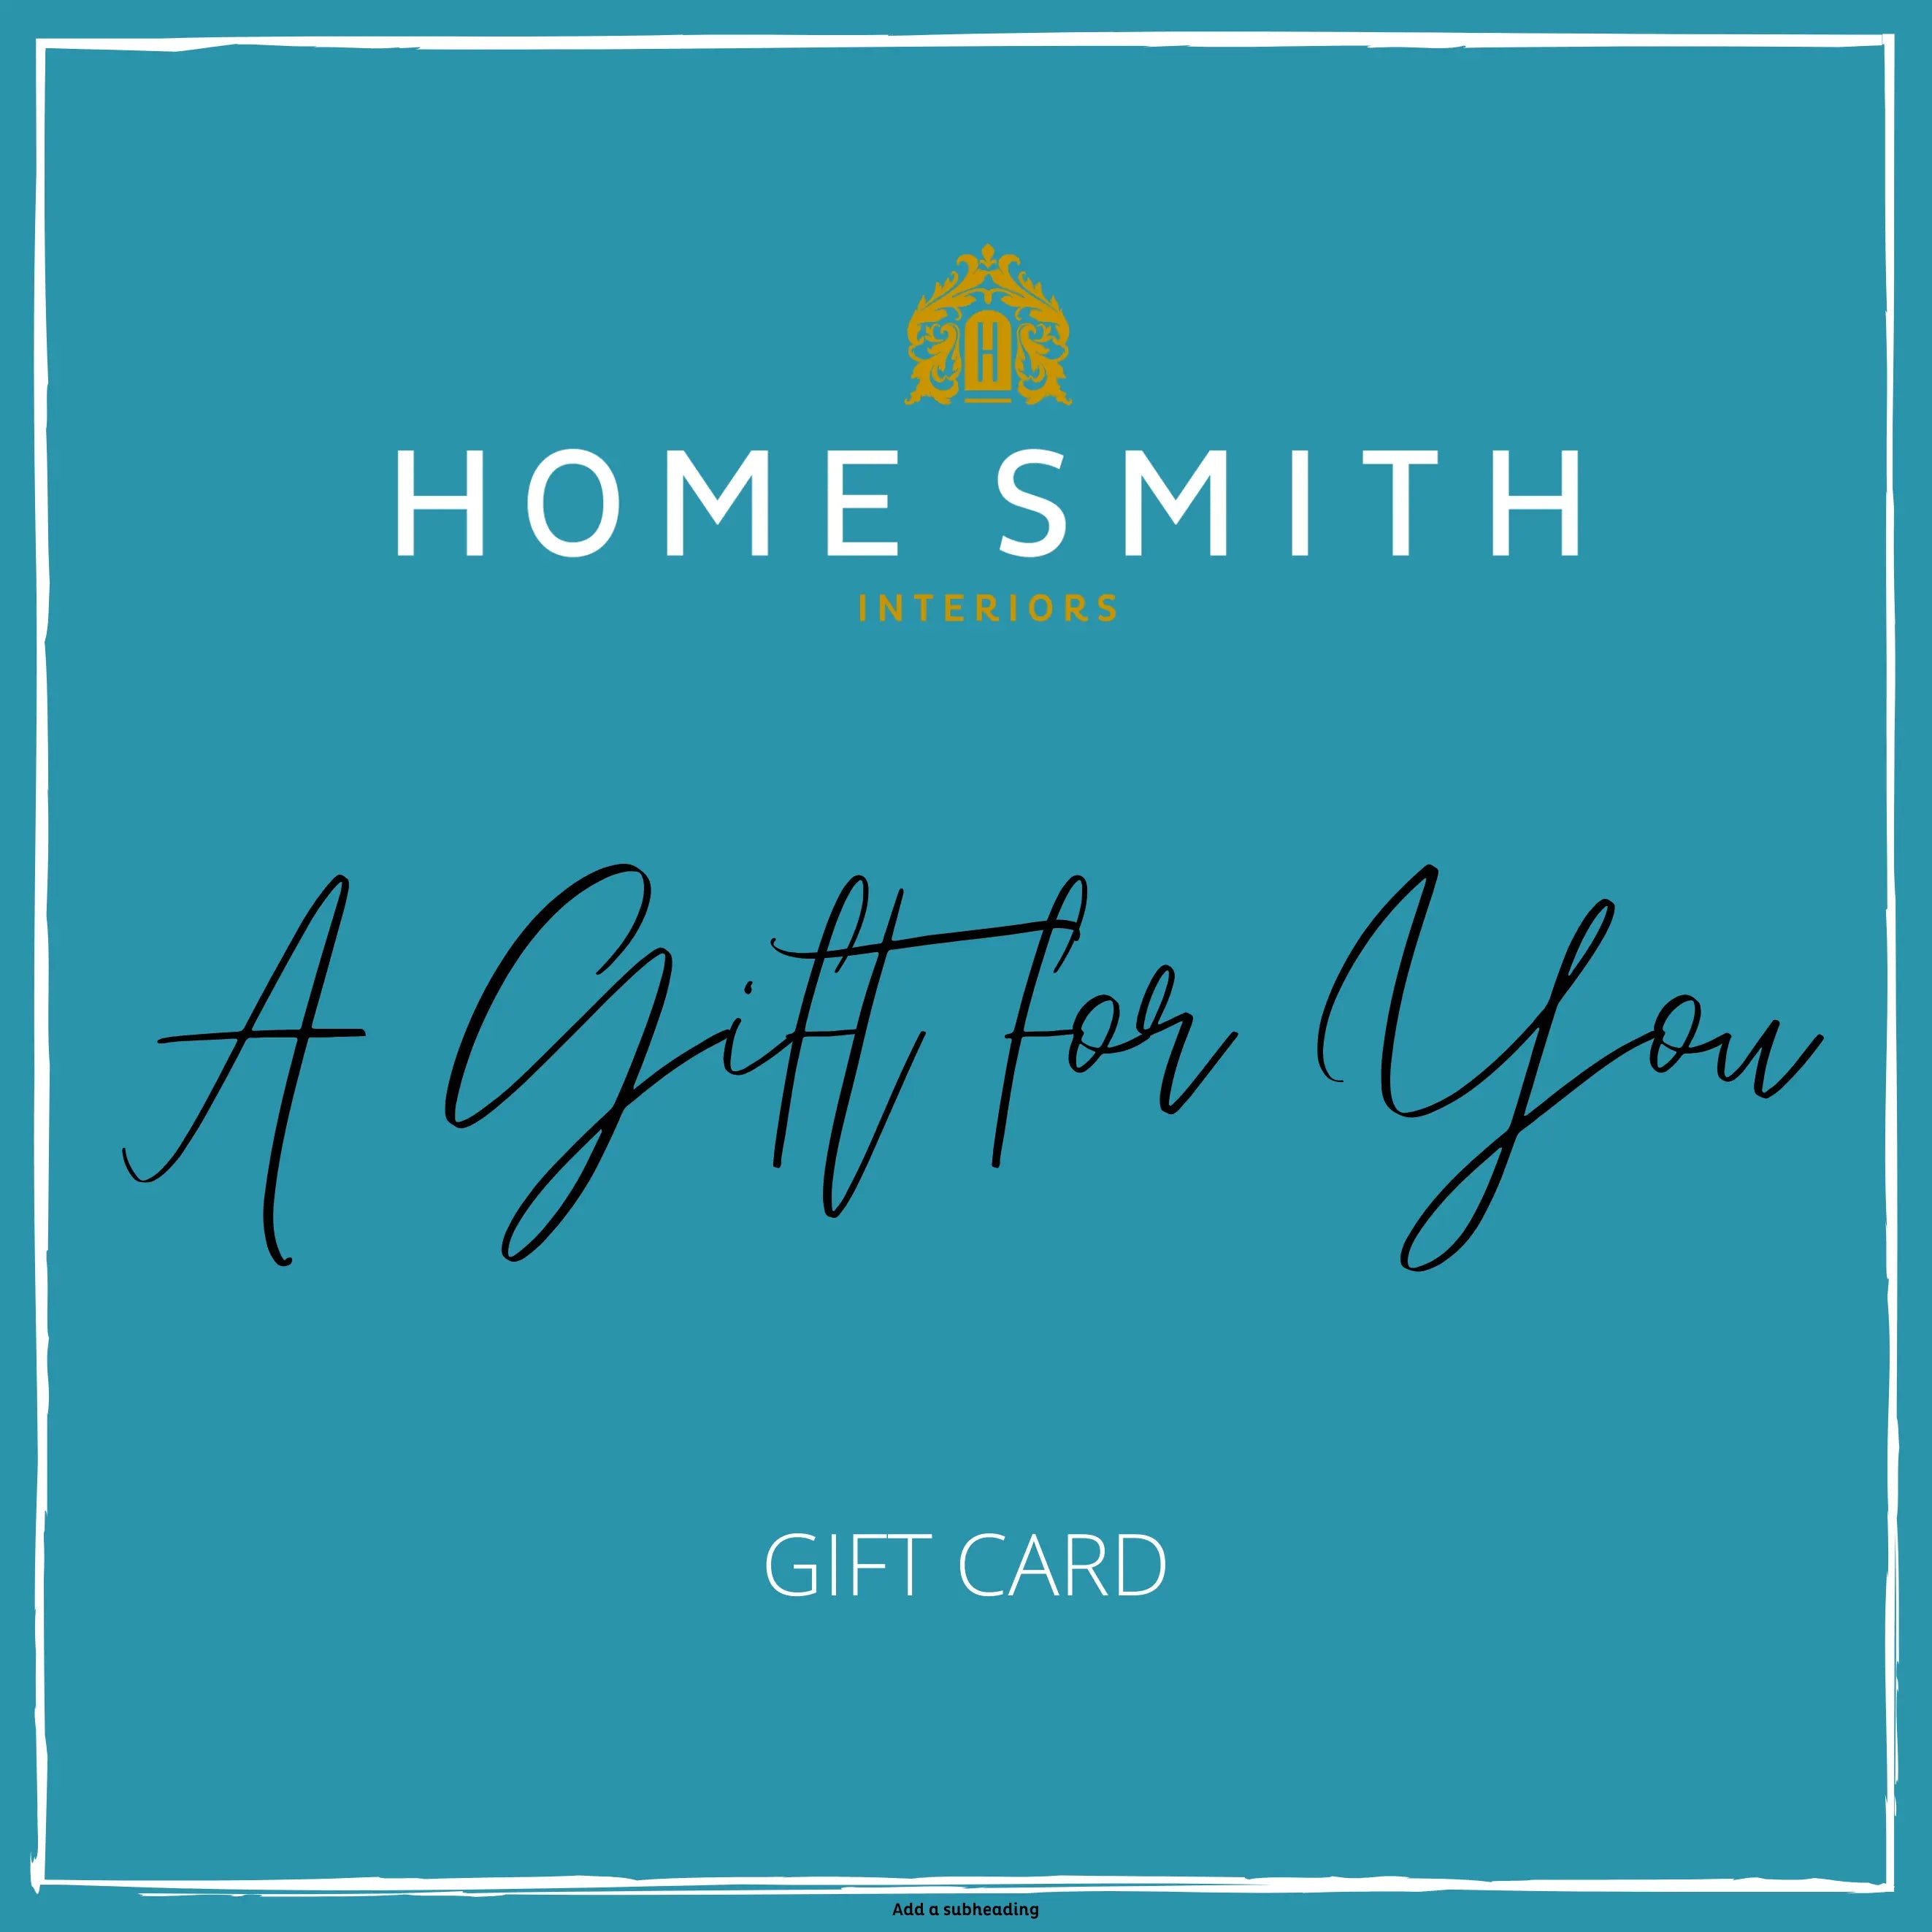 Home Smith Gift Card - Home Smith